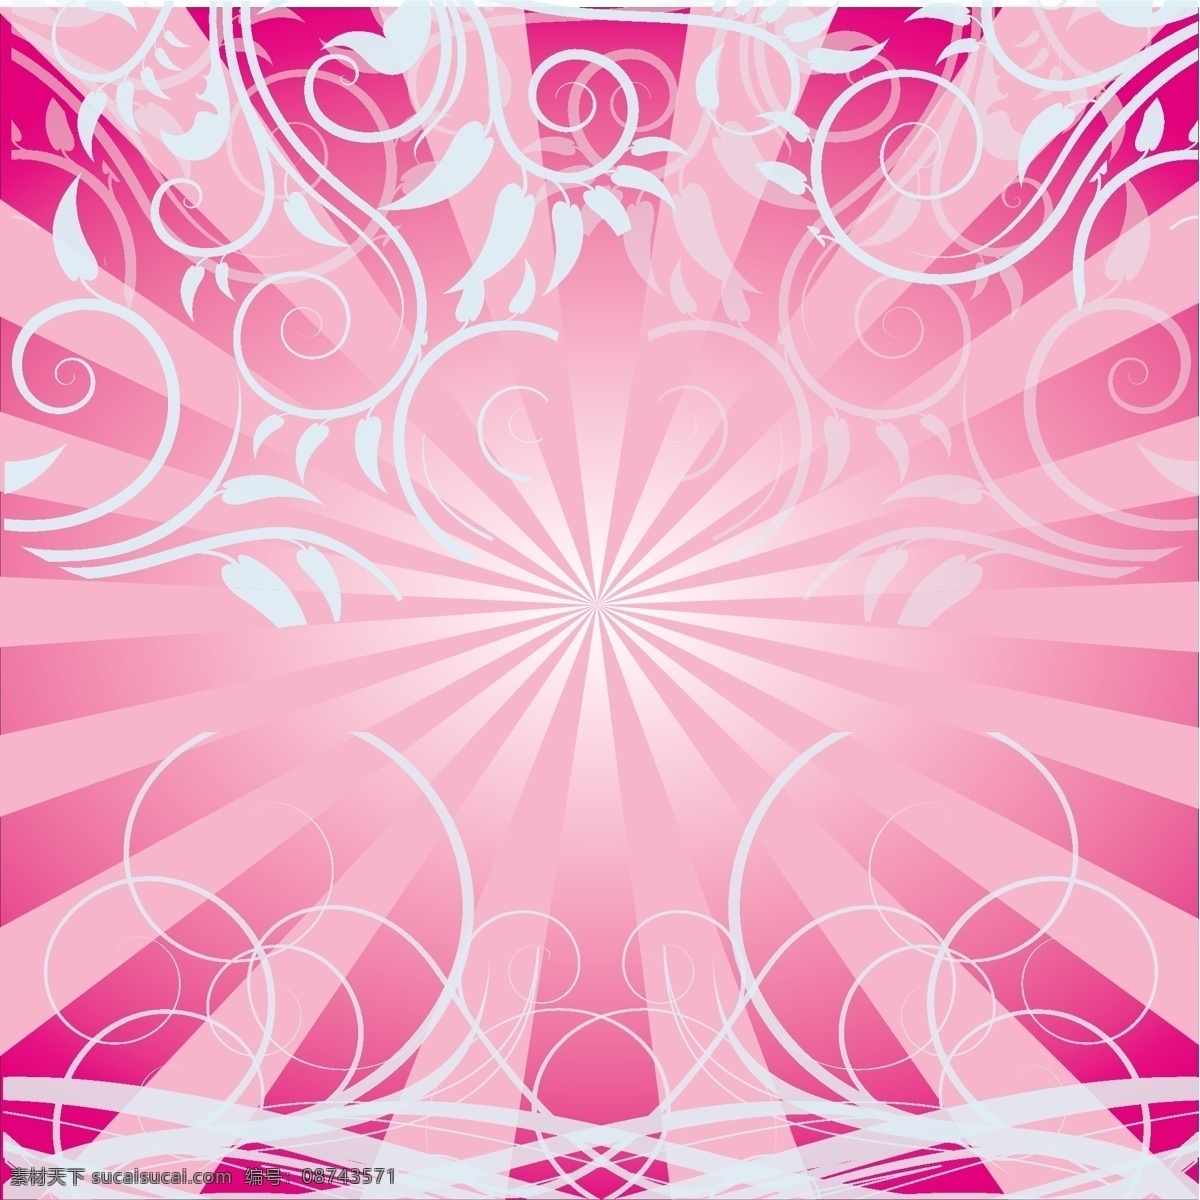 免费 粉红色 漩涡 背景 打印 花 空间 闪亮的 梯度 矢量图 其他矢量图